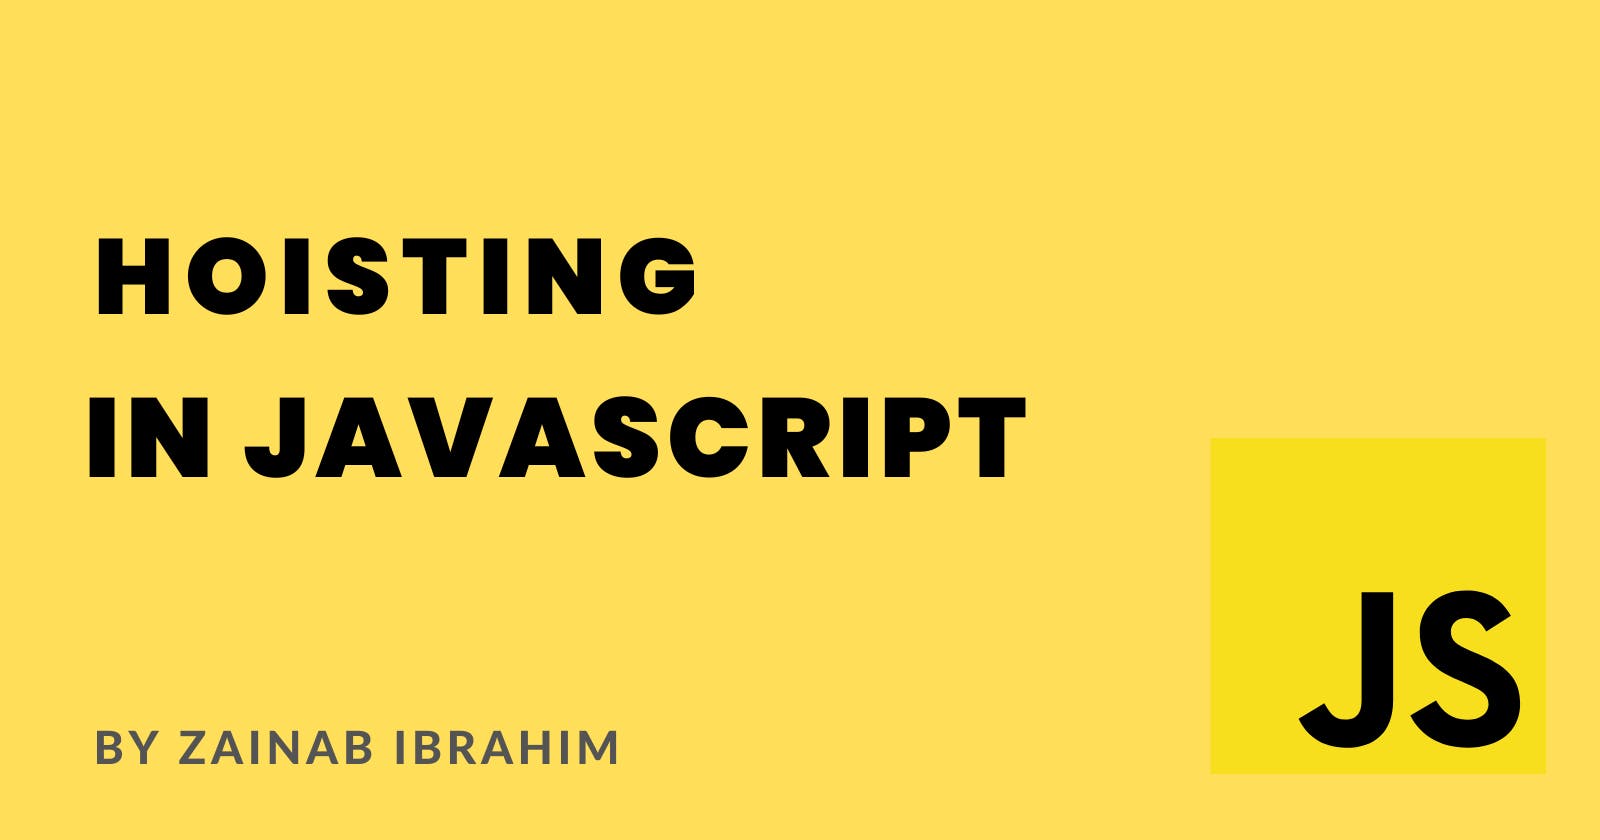 What is Hosting in JavaScript?